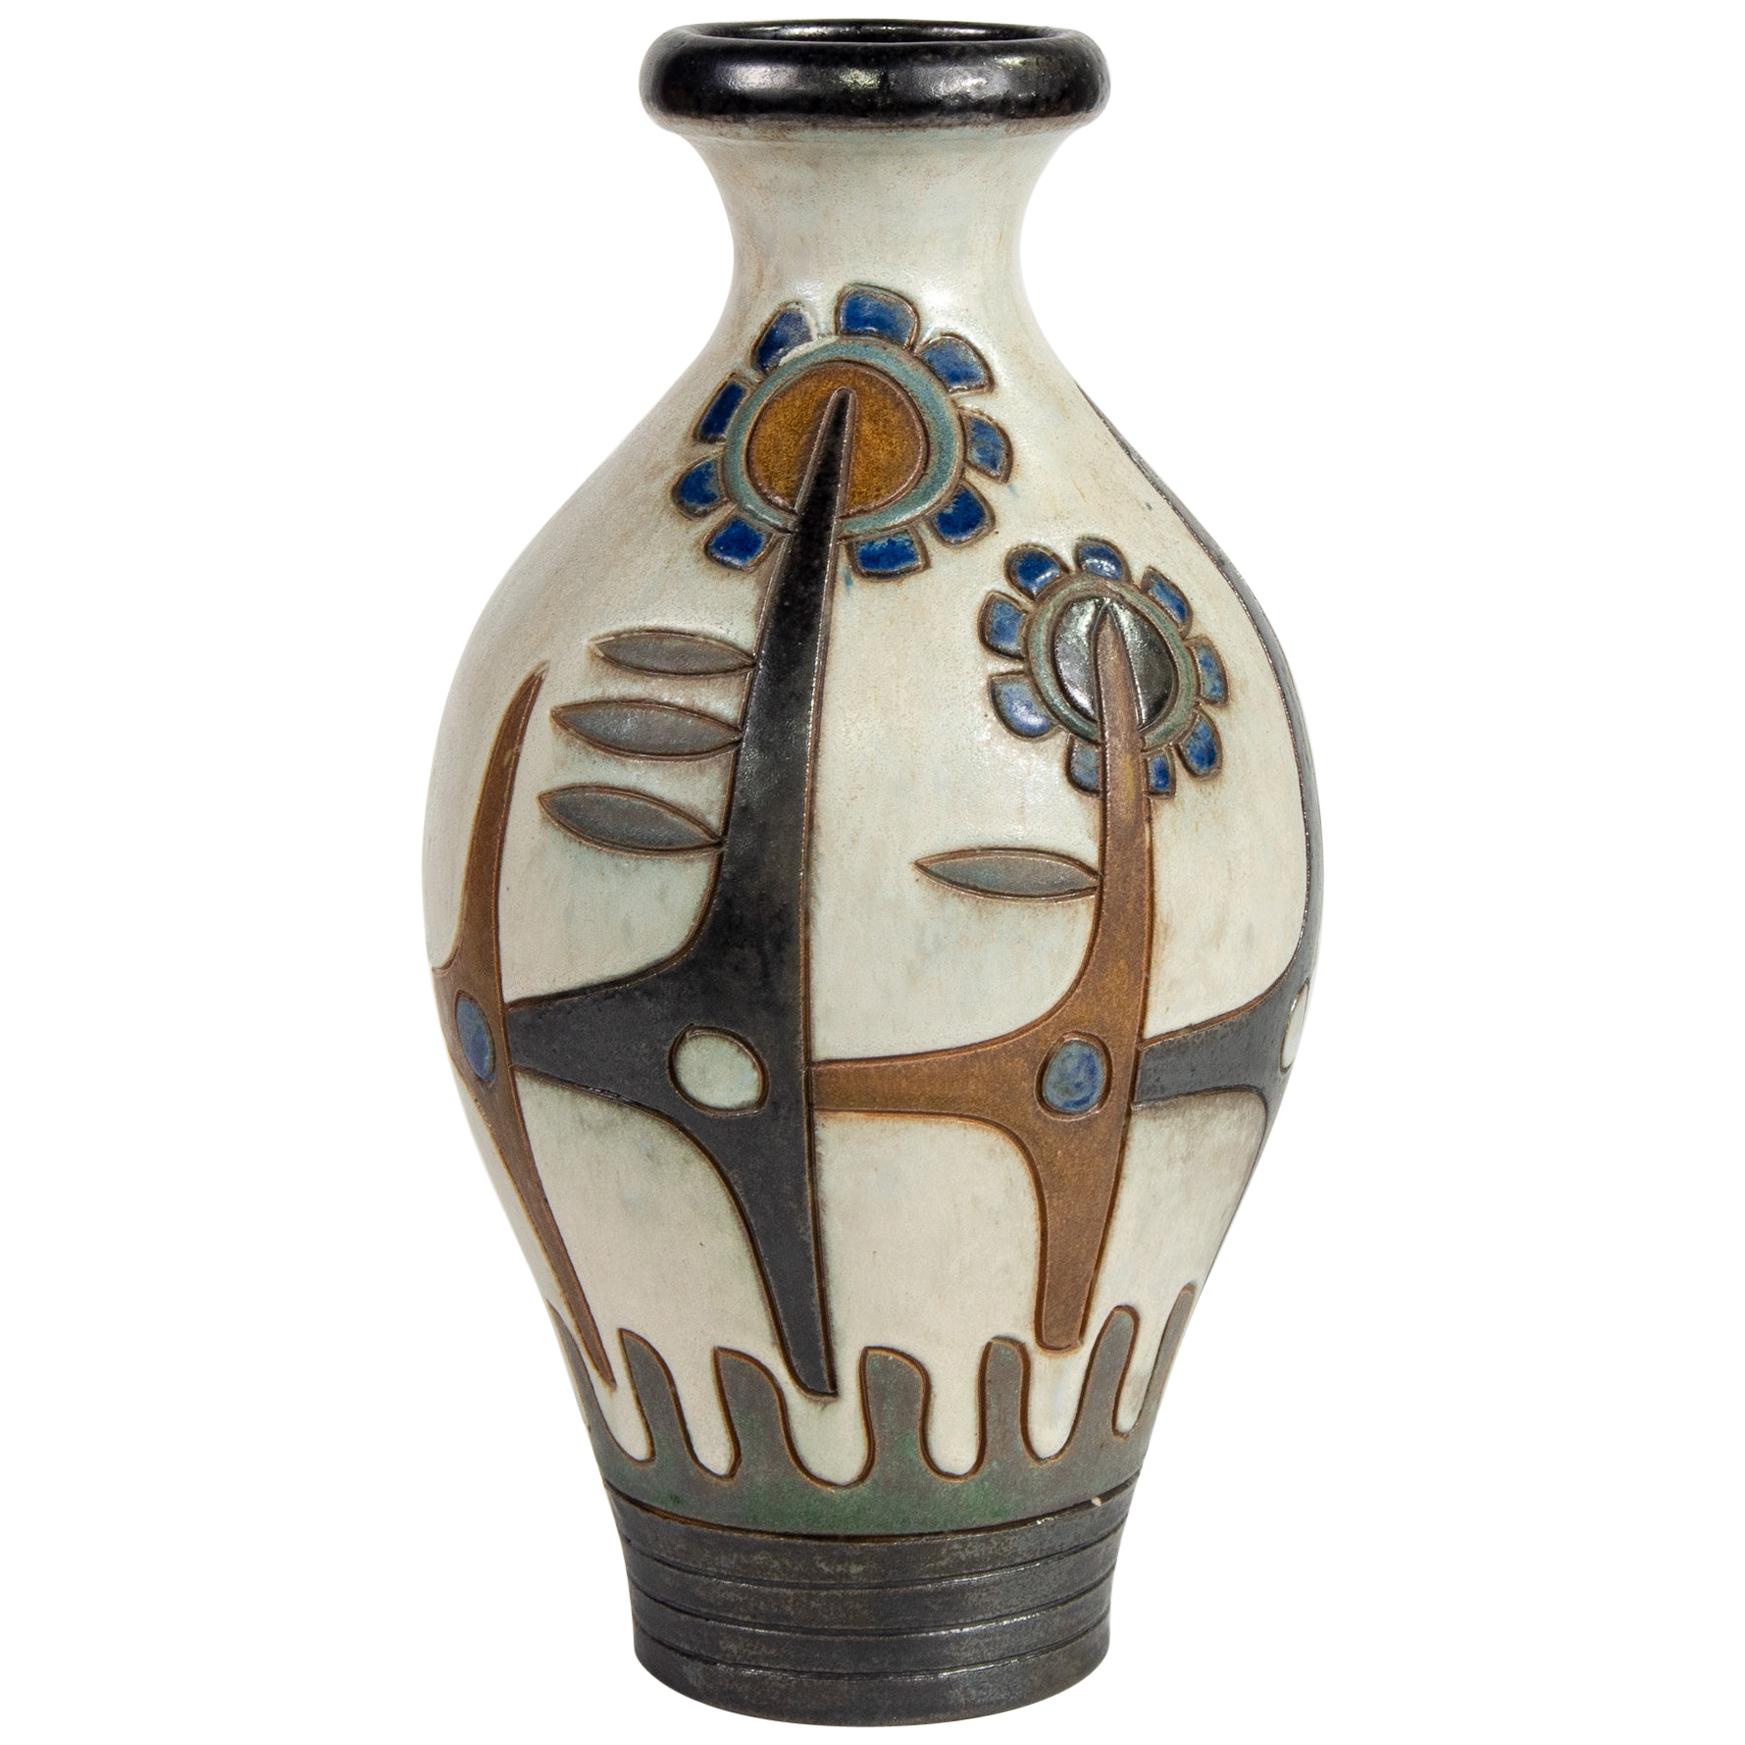 Tall Signed Dubois of Belgium Midcentury Ceramic Vase